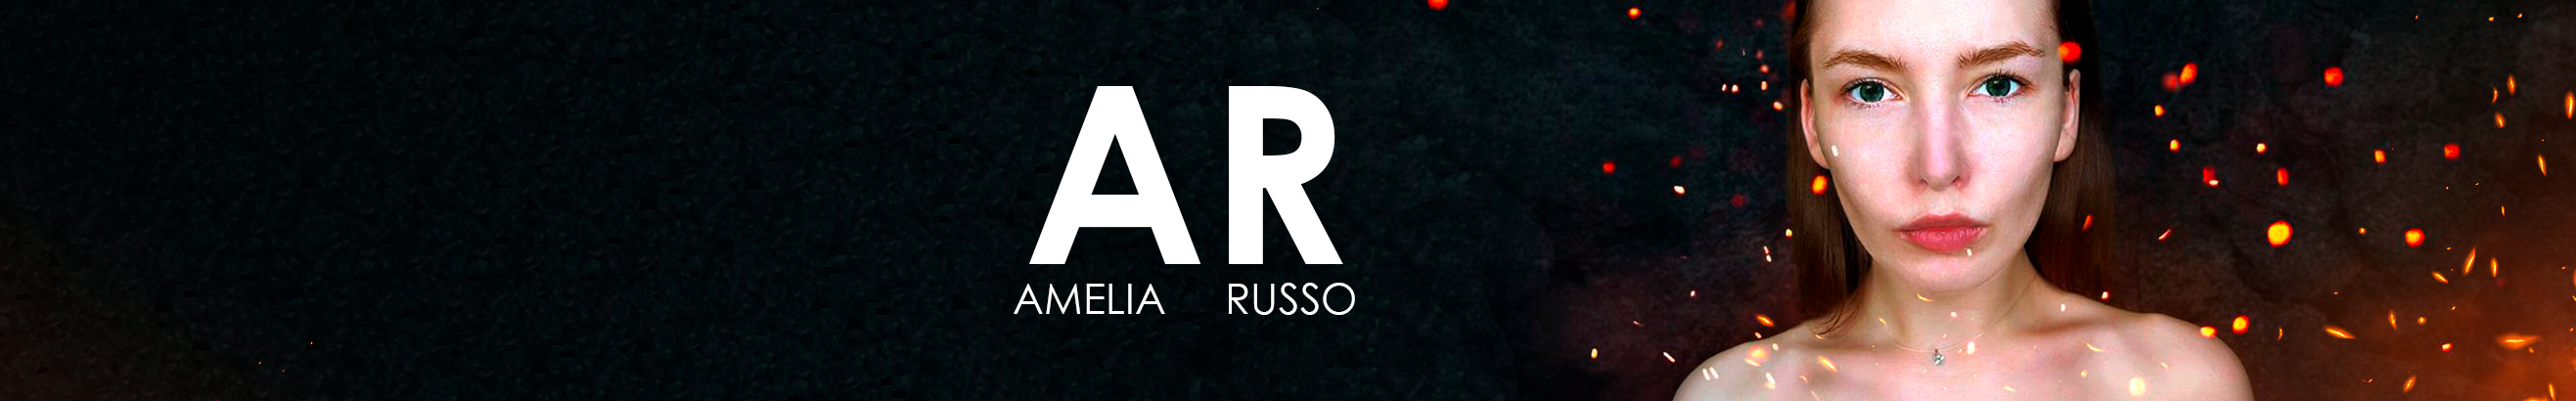 Amelia Russo's profile banner